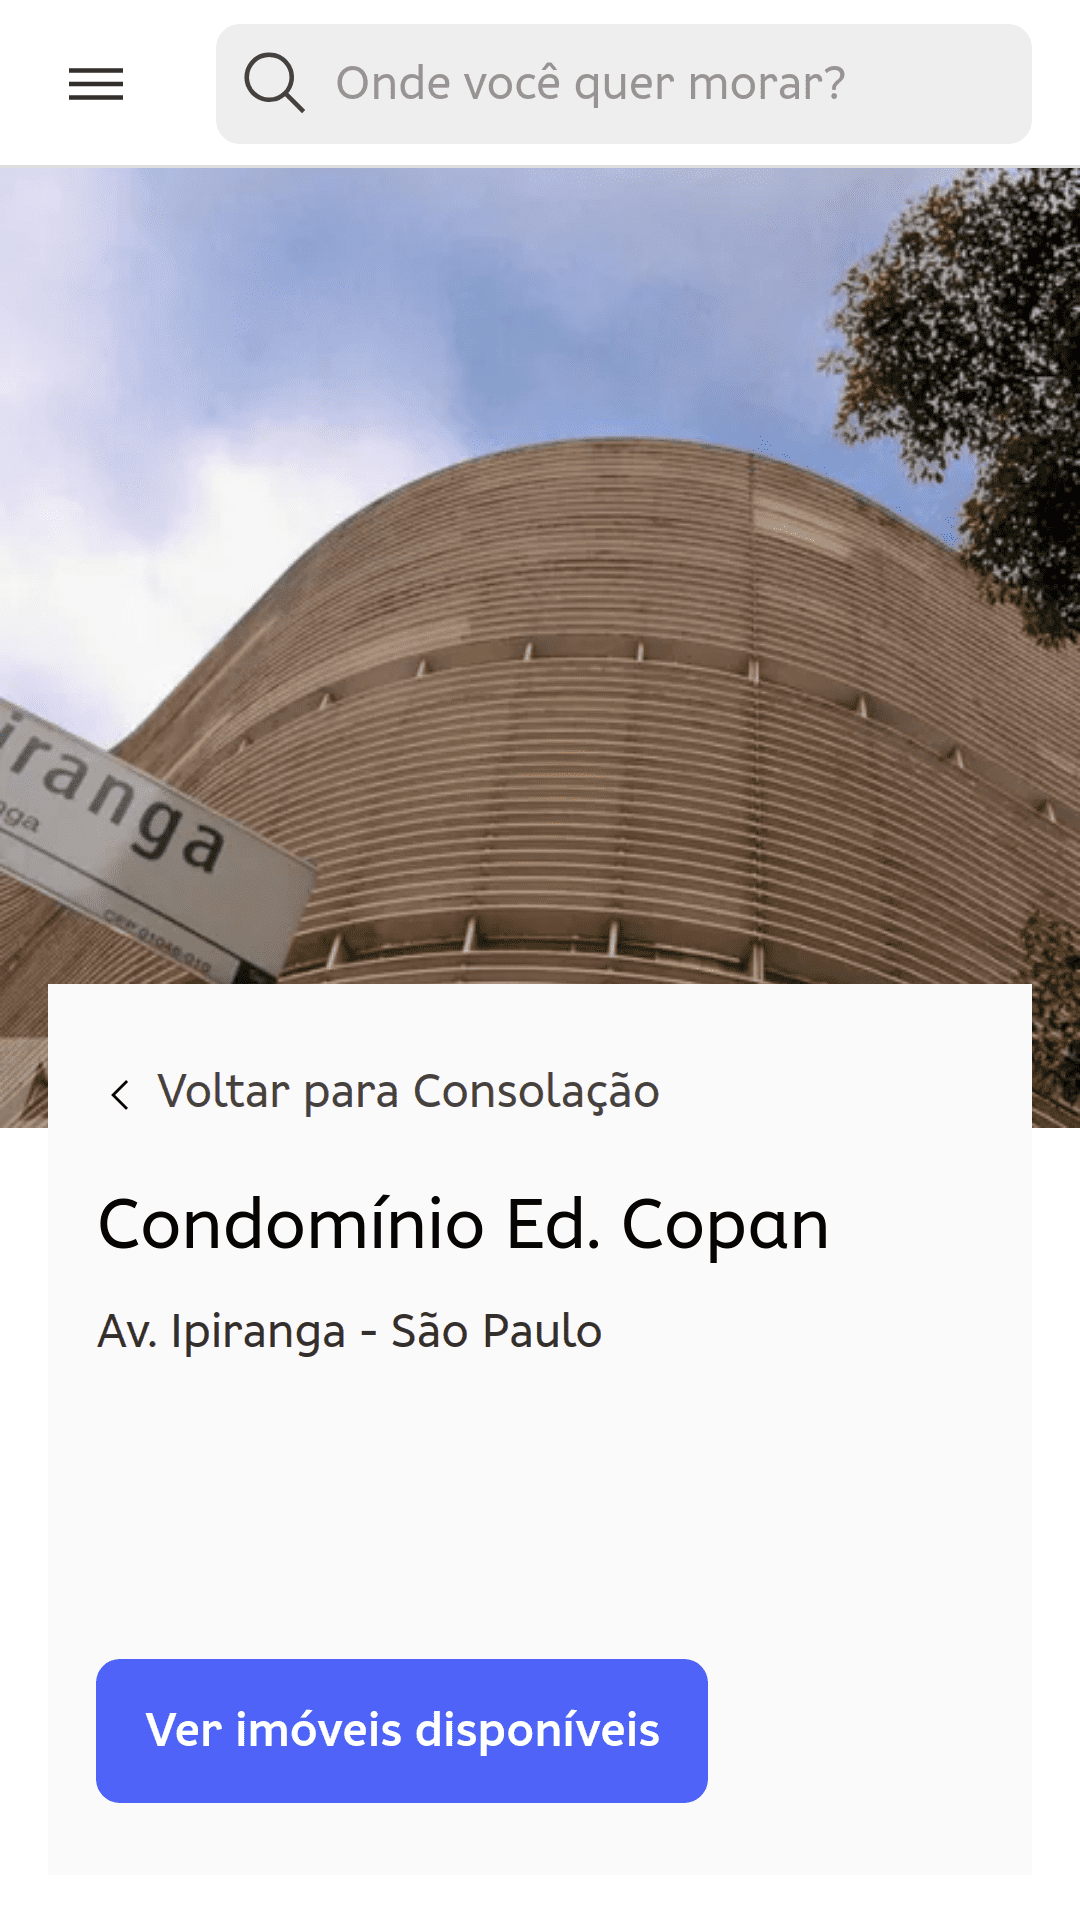 דף הבית של Edifício Copan (סאו פאולו, ברזיל). בתמונה שמצולמת מגובה פני הקרקע מוצגות הקקומות של מבנה הבניין.